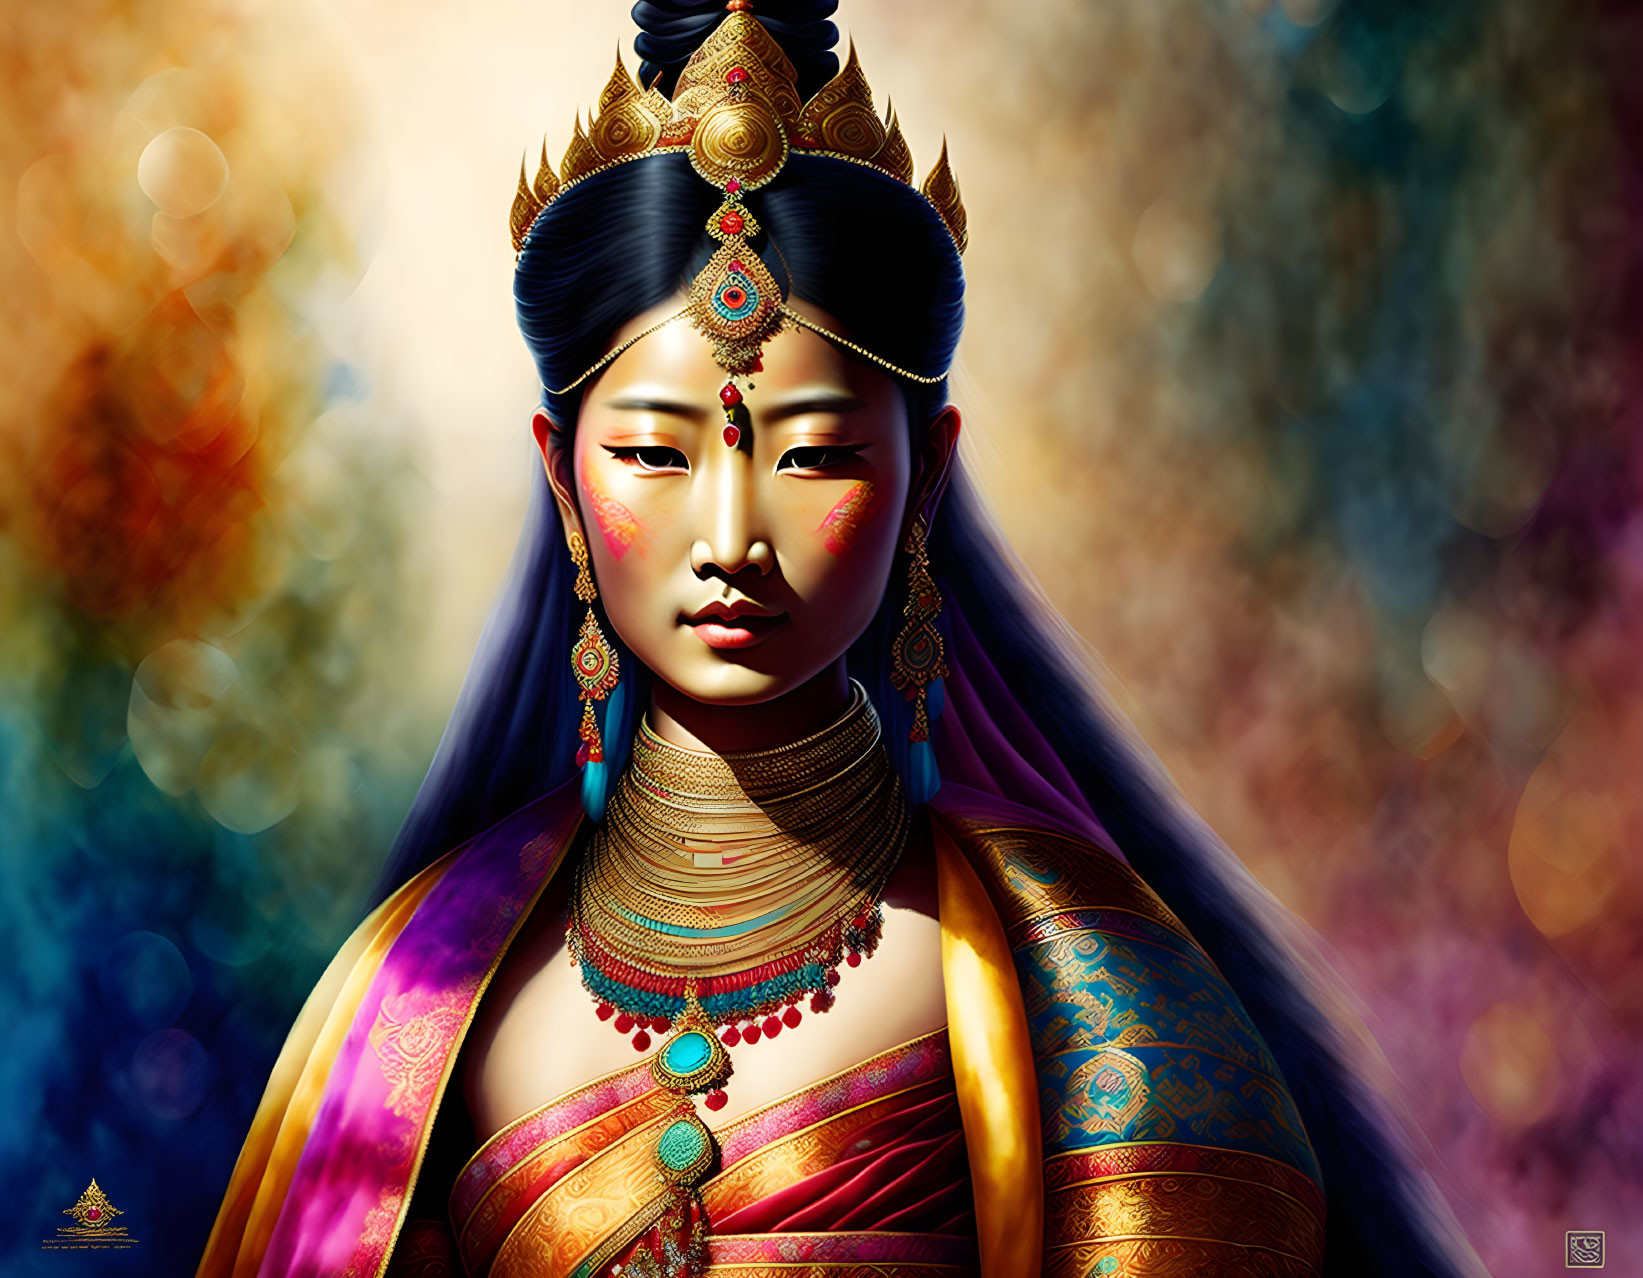 Tibetan princess